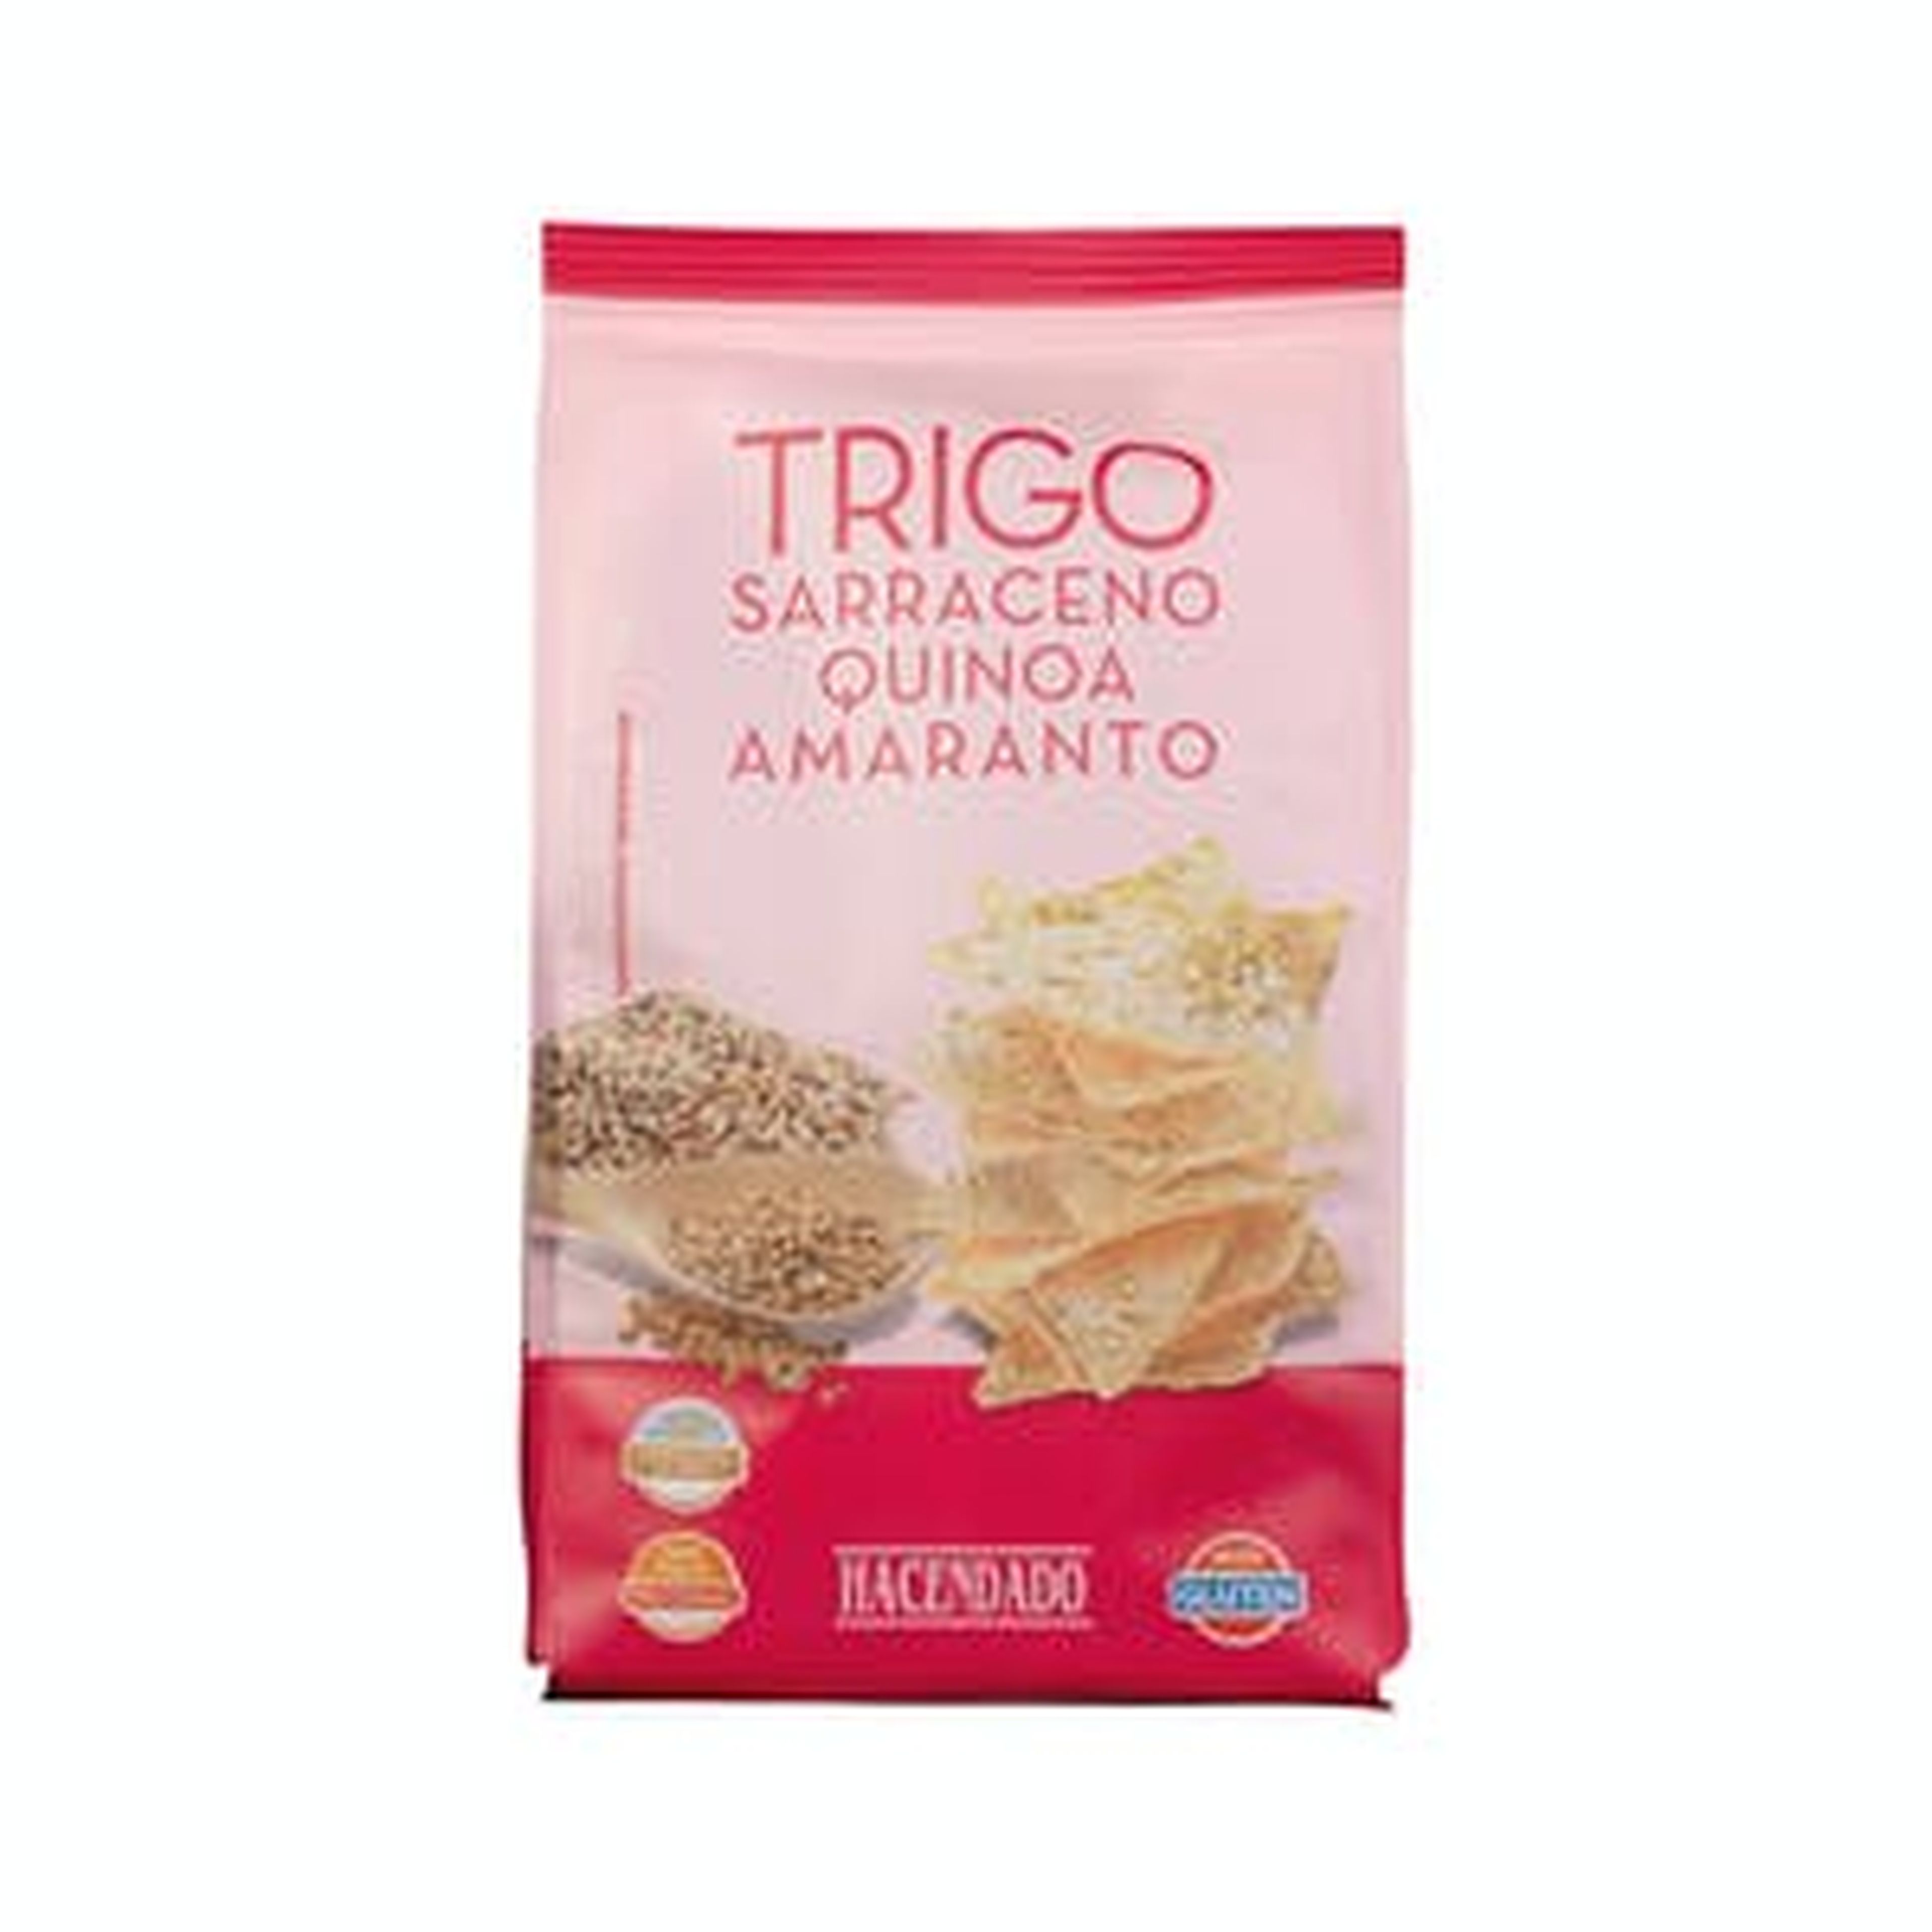 Triángulos de trigo sarraceno con quinoa y amaranto Hacendado